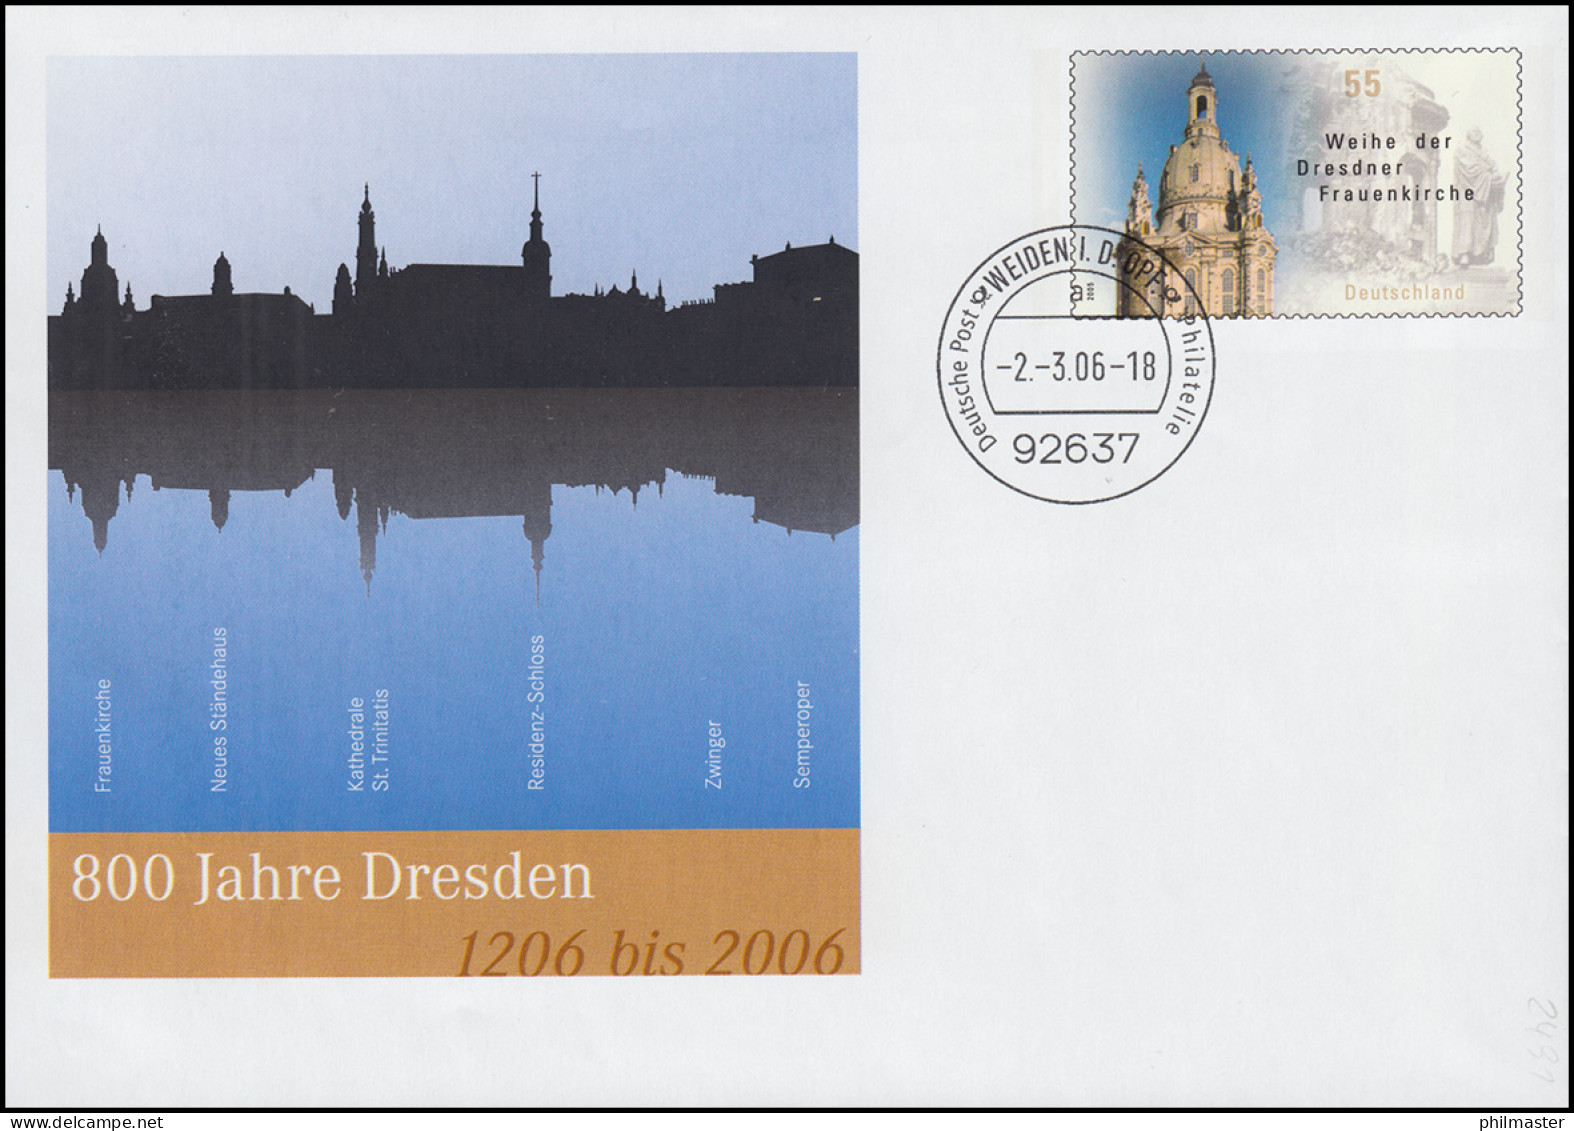 USo 112 Jubiläum 800 Jahre Dresden 2006, VS-O Weiden 2.3.06 - Covers - Mint